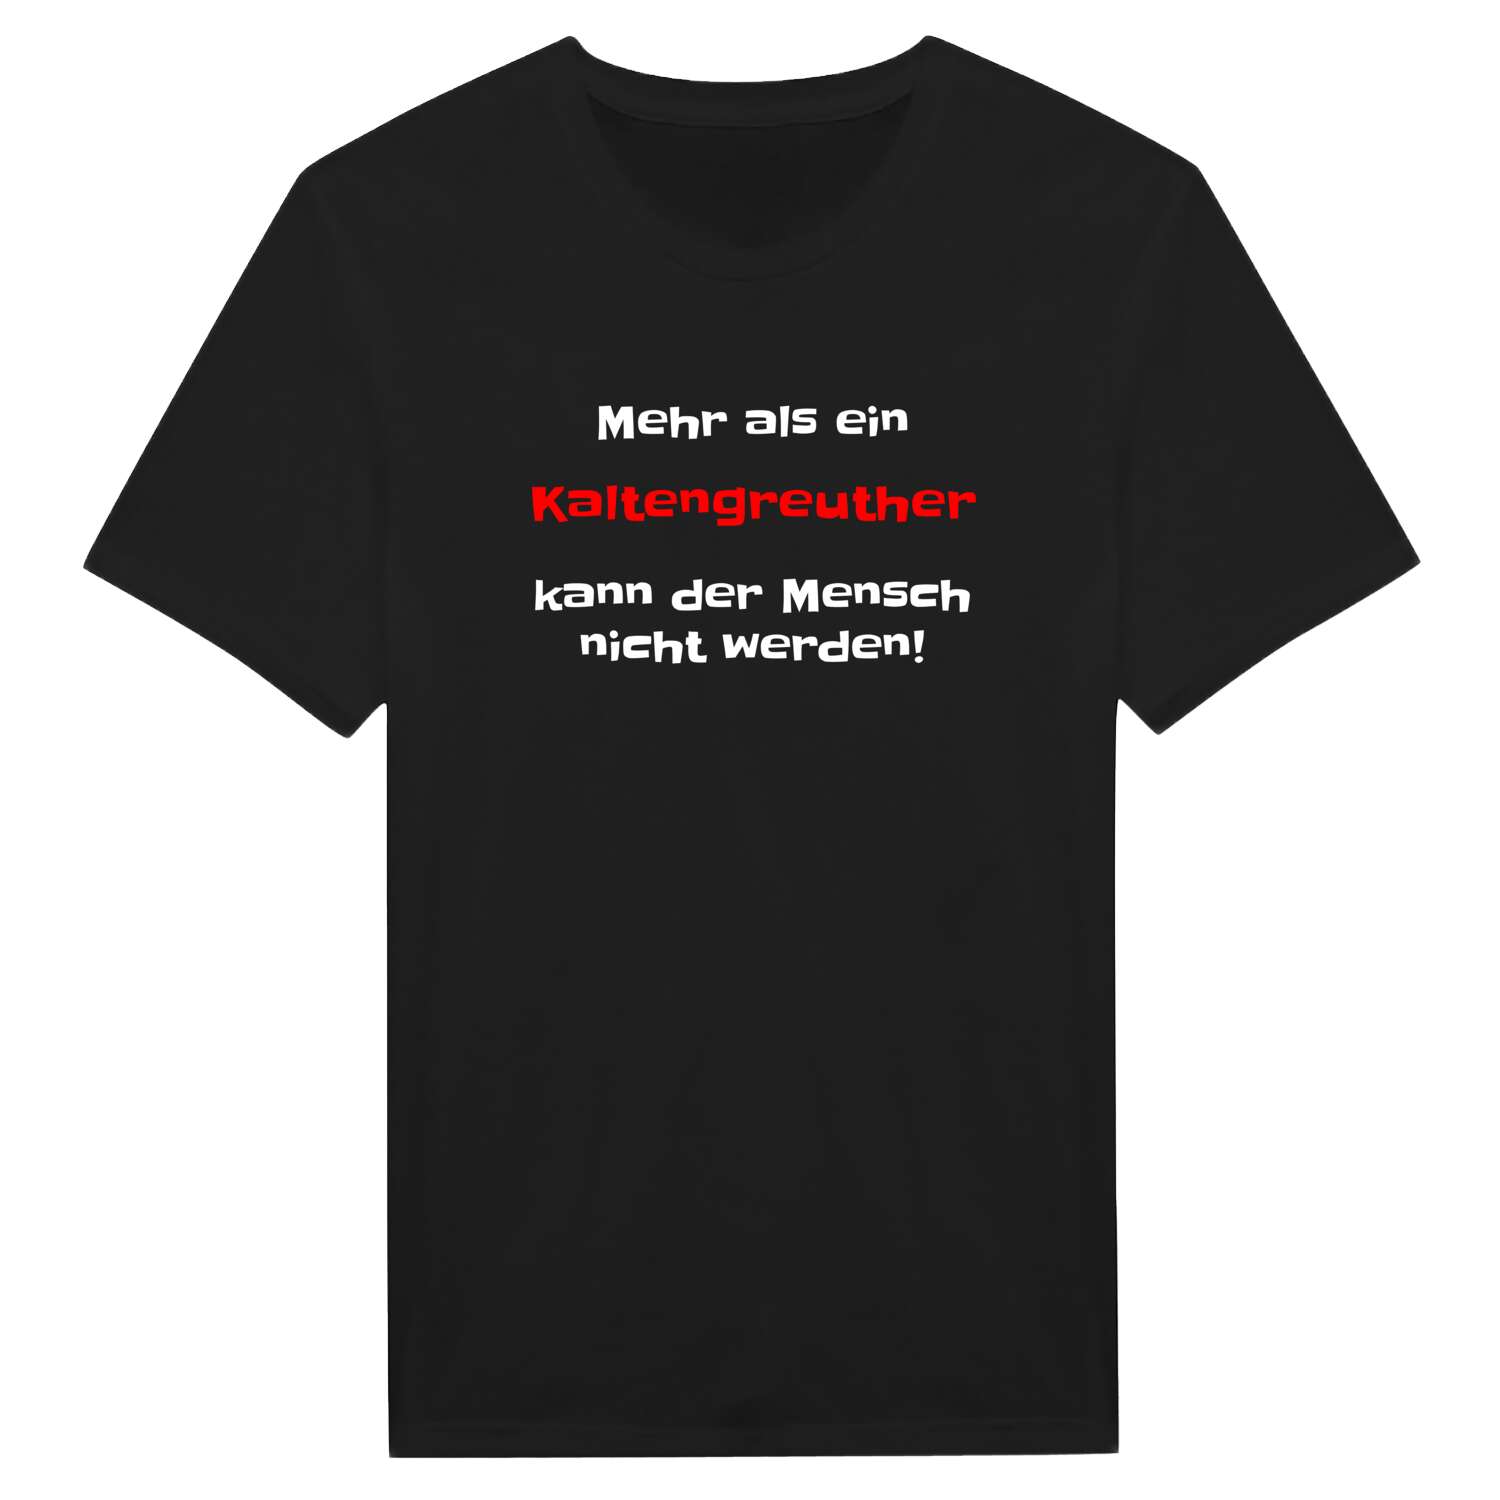 Kaltengreuth T-Shirt »Mehr als ein«